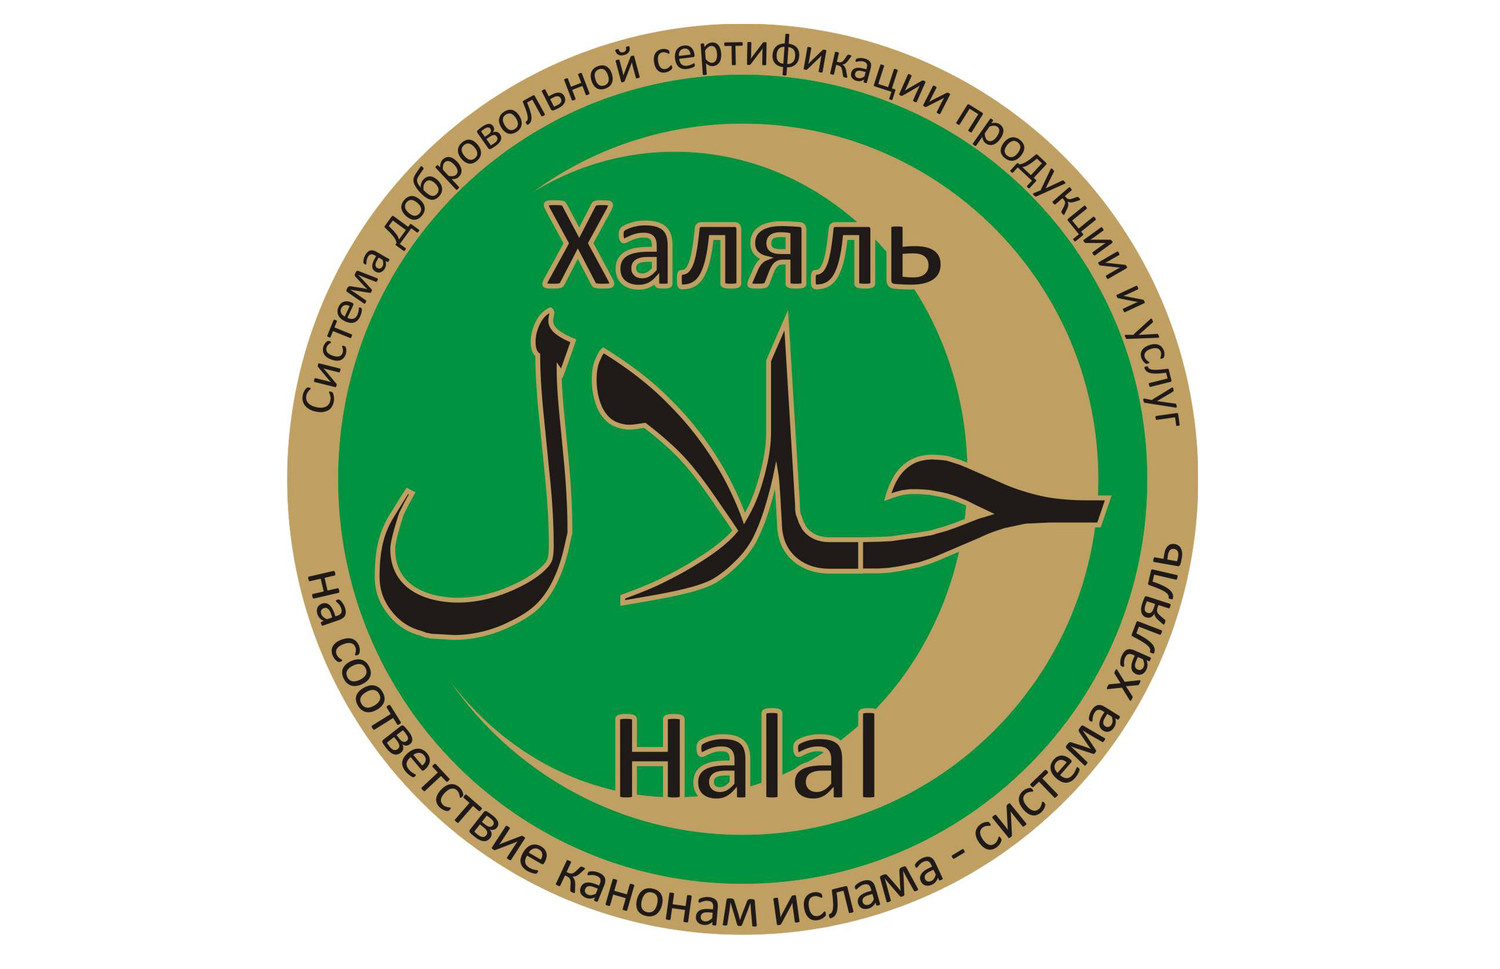 Татарстан является лидером в индустрии халяль в России